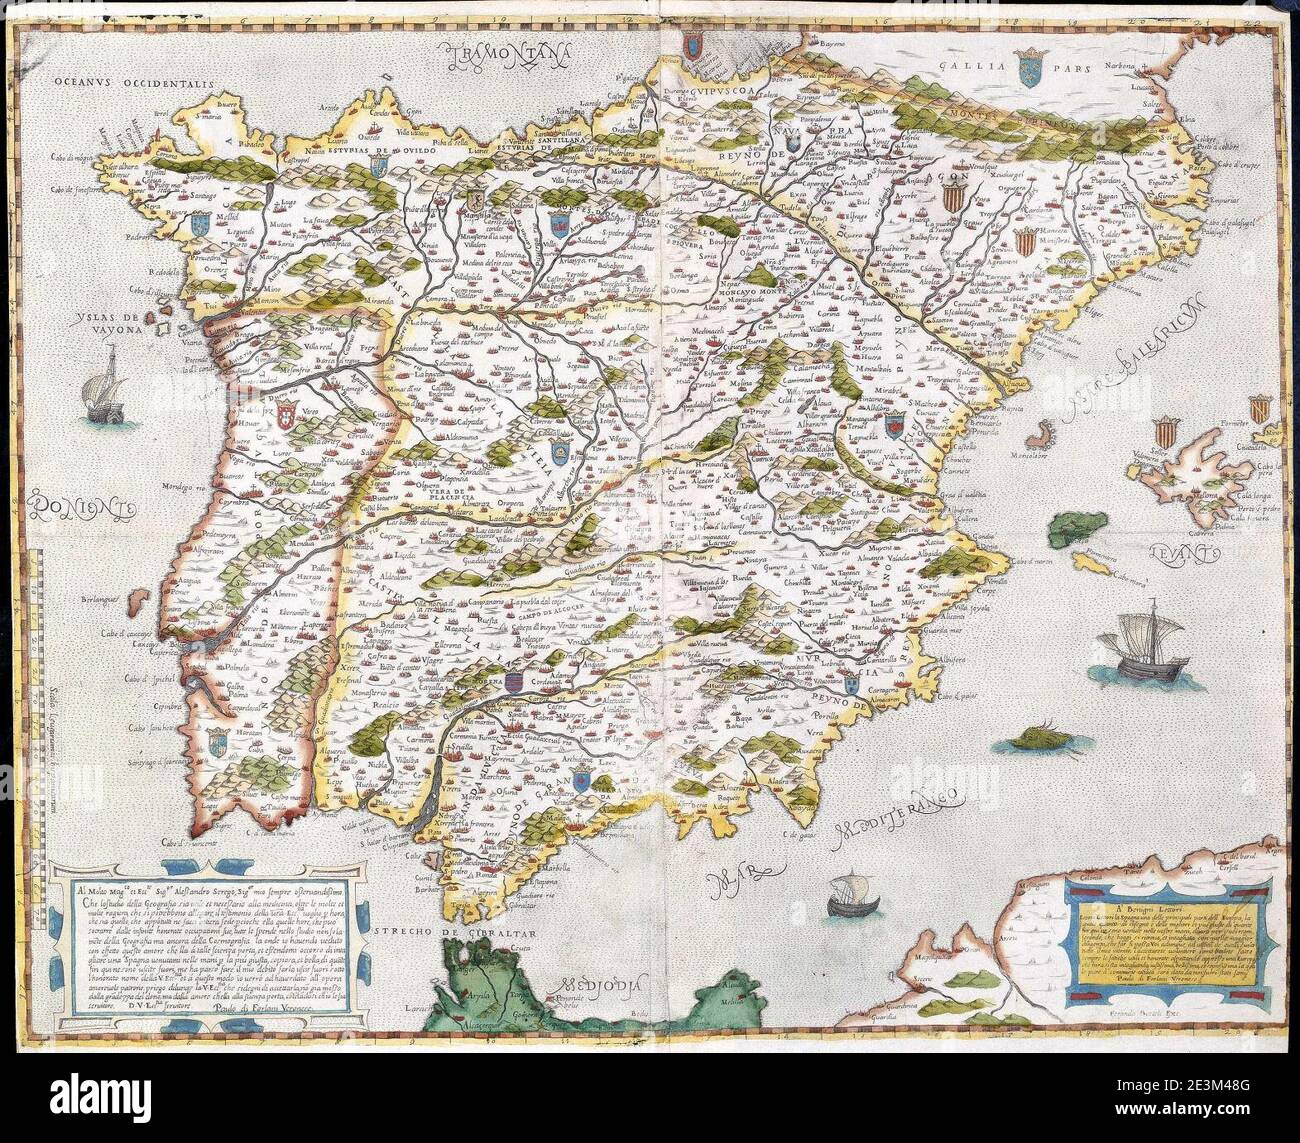 Mapa de España y Portugal (Forlani de Veronese). Stock Photo